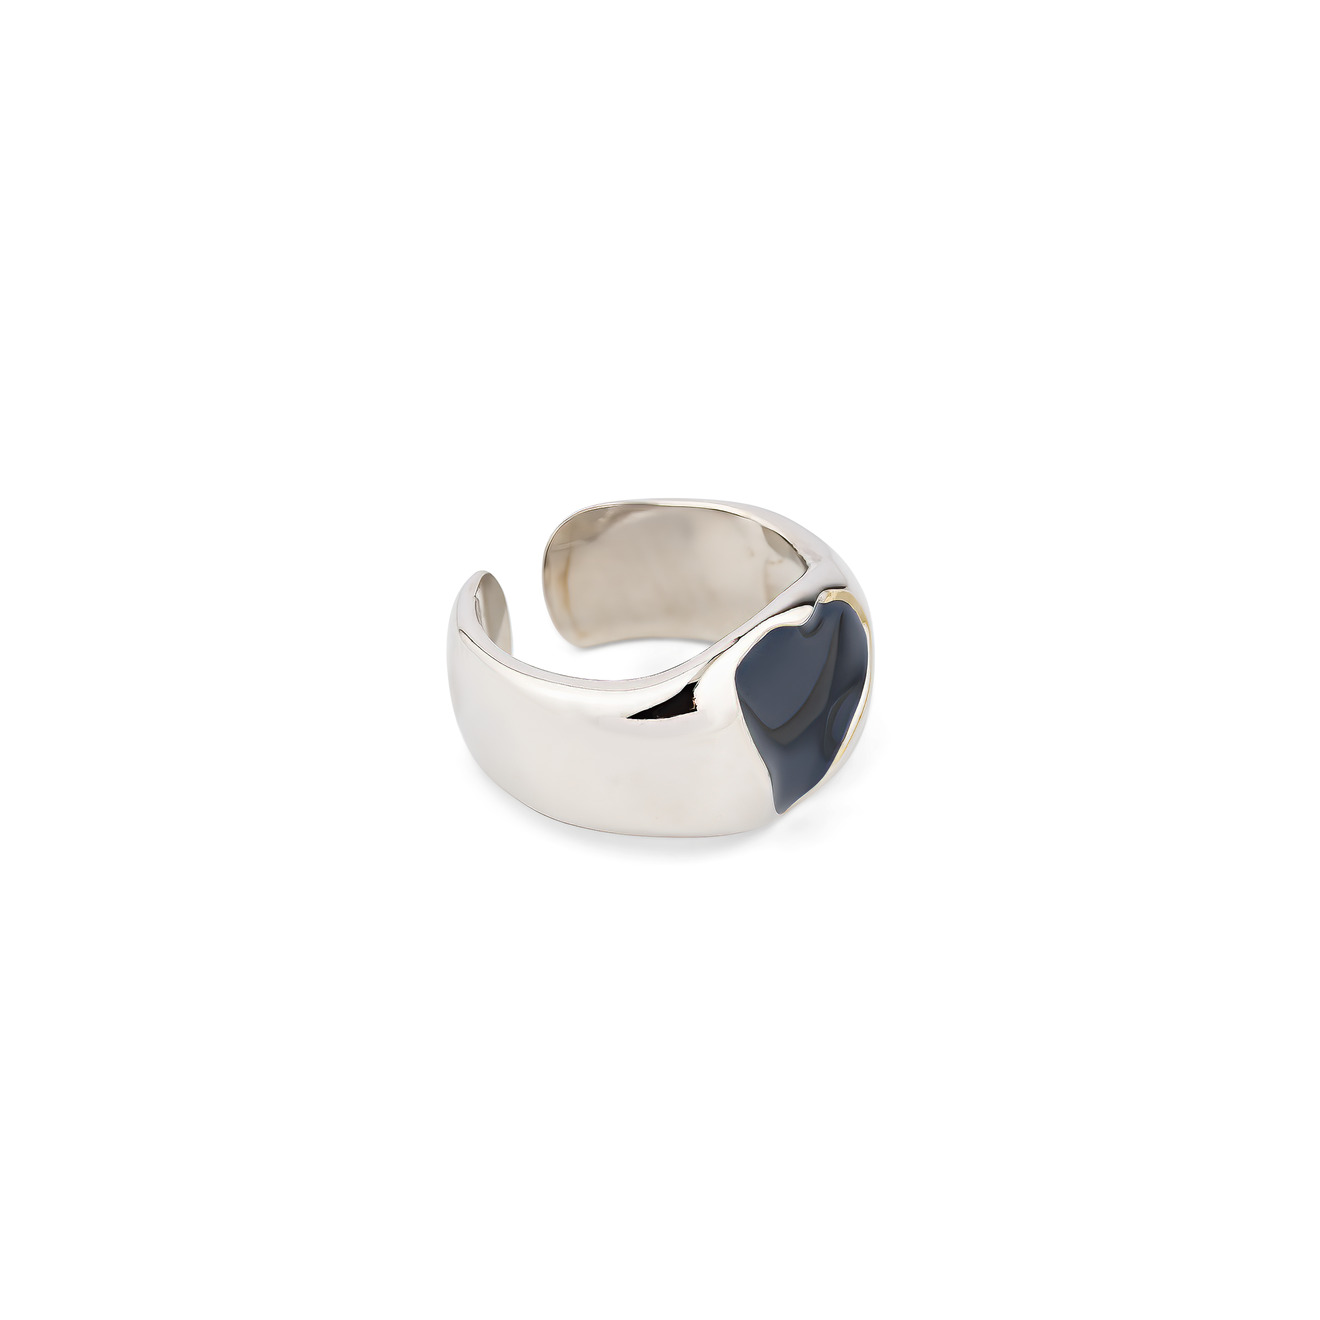 Free Form Jewelry Кольцо серебристое с черным сердечком кольцо free form jewelry серебристое узкое дутое 1 шт